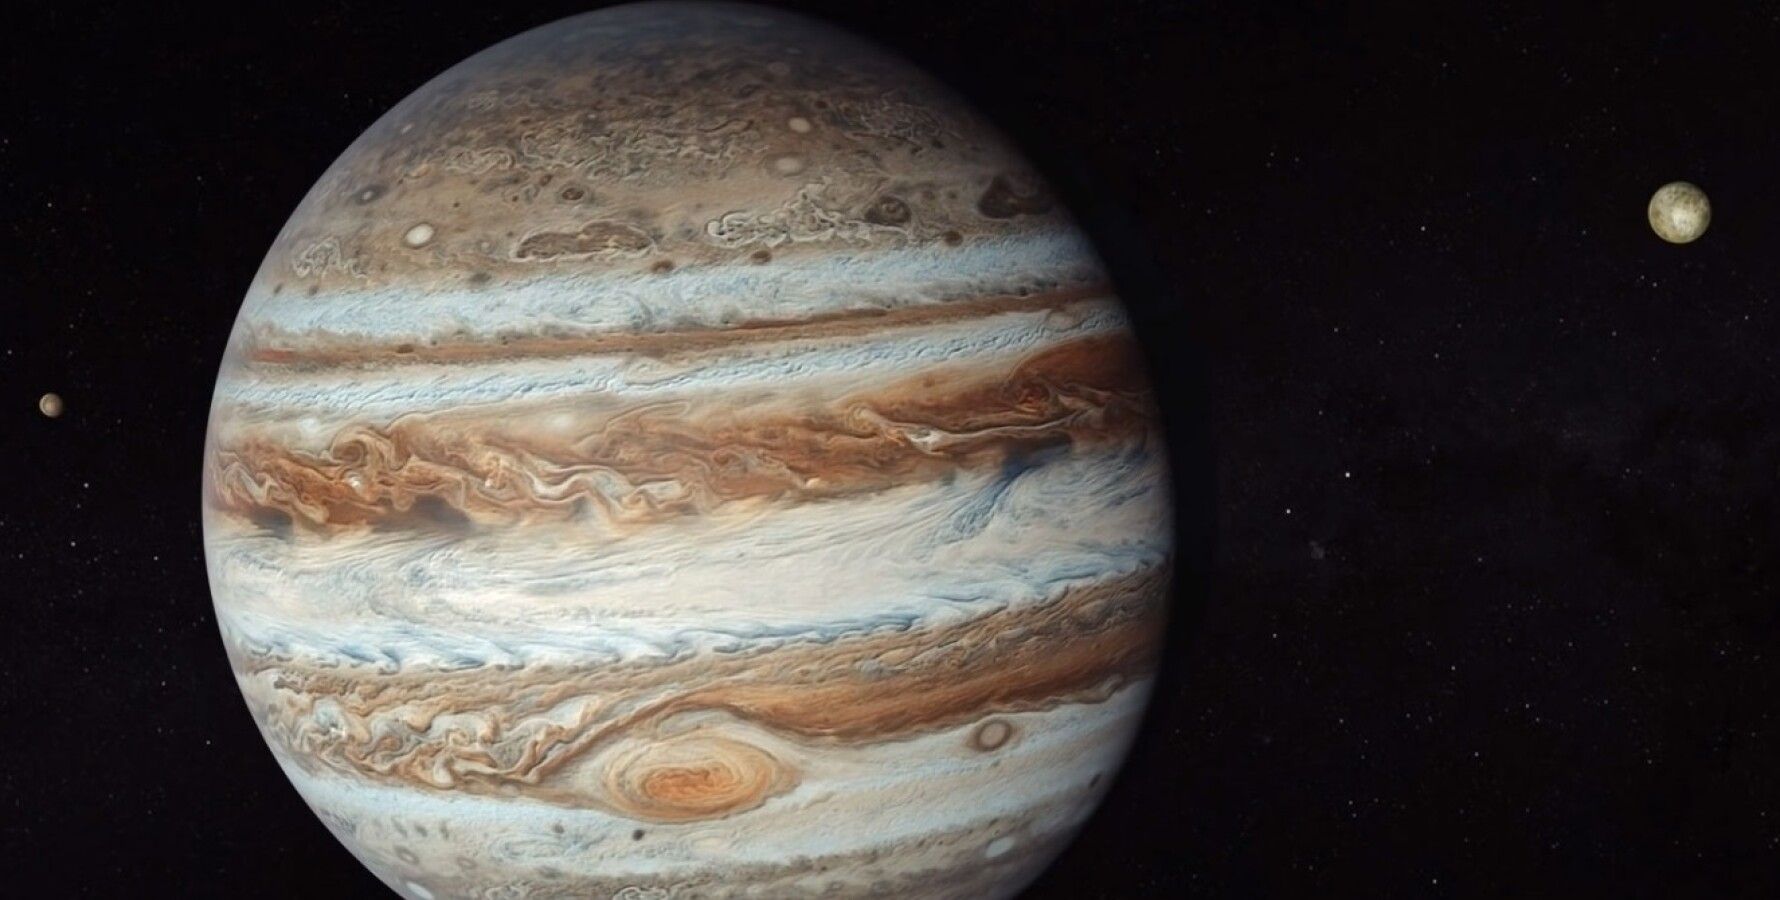 Путешествие к Юпитеру и Ганимеду. Видео, сделанное на основе данных аппарата «Юнона»